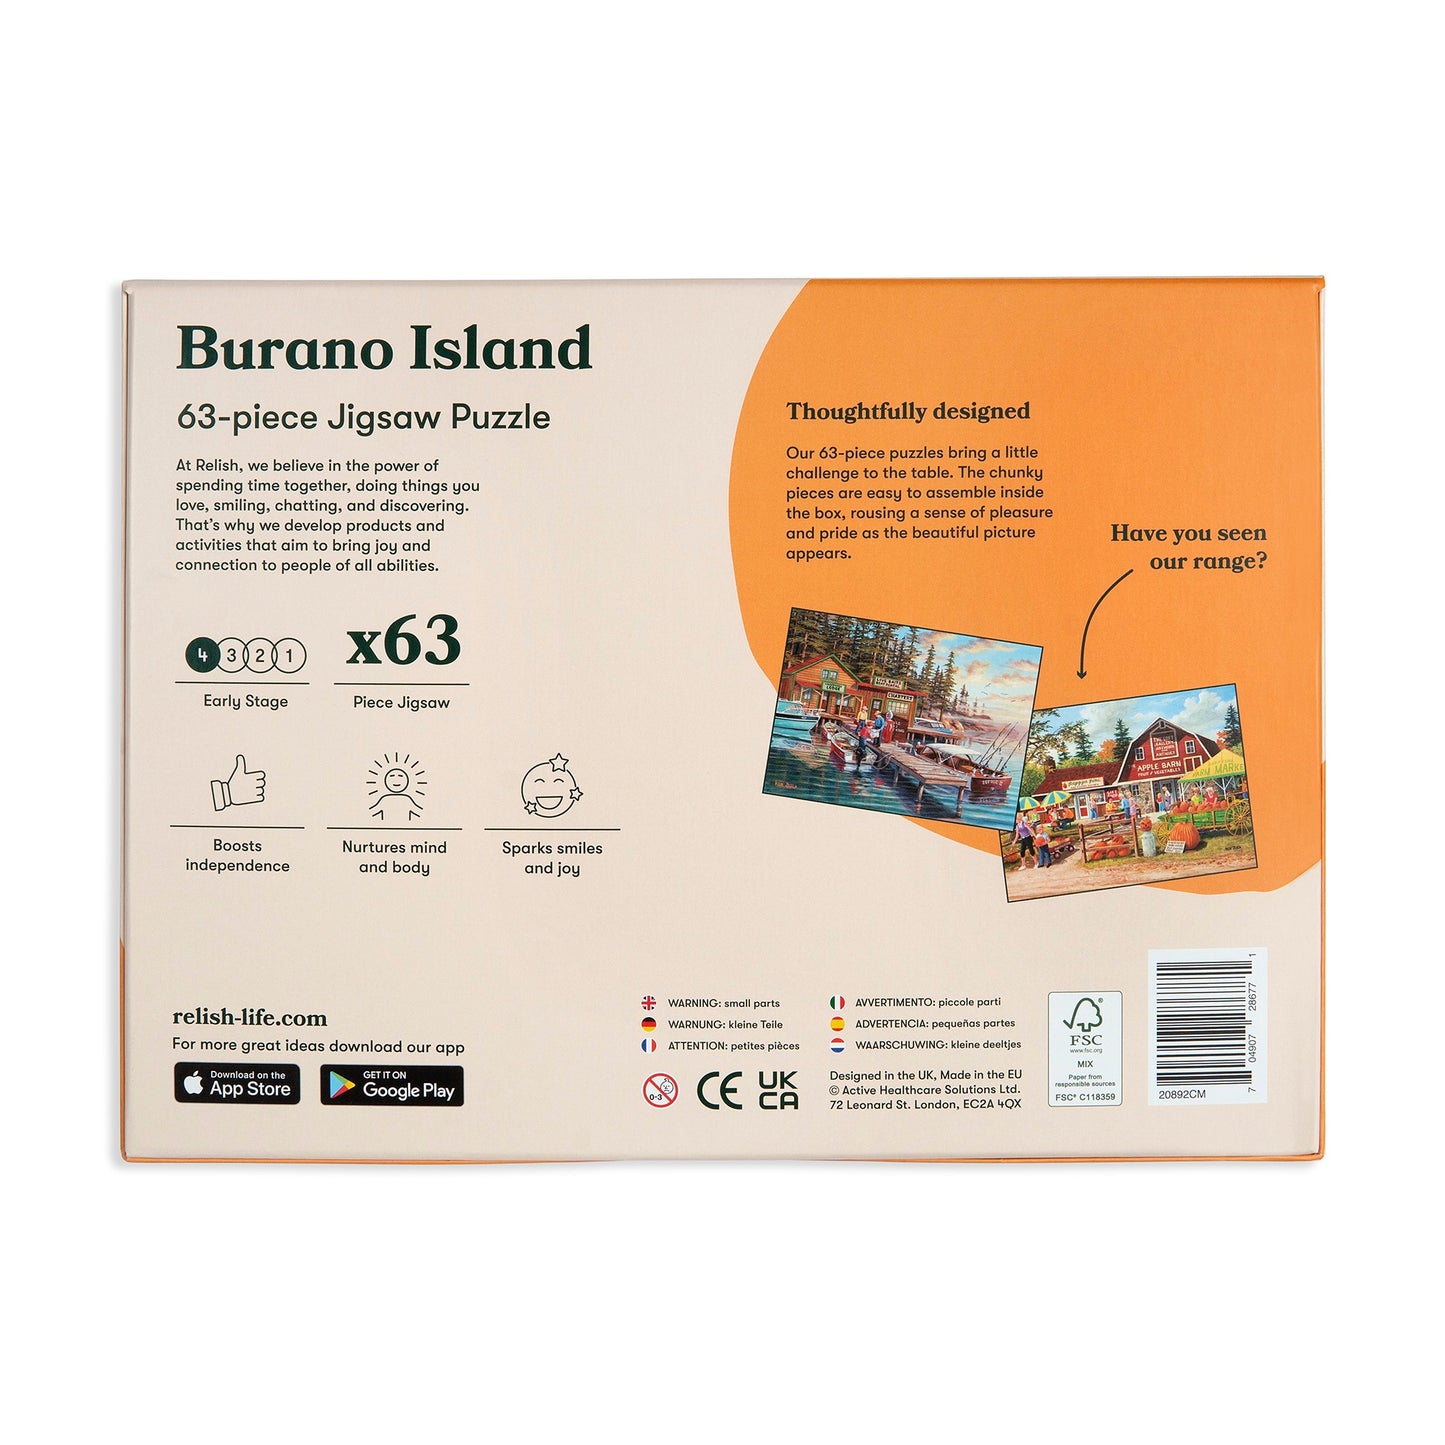 Puzzle 63 pièces - Burano Island